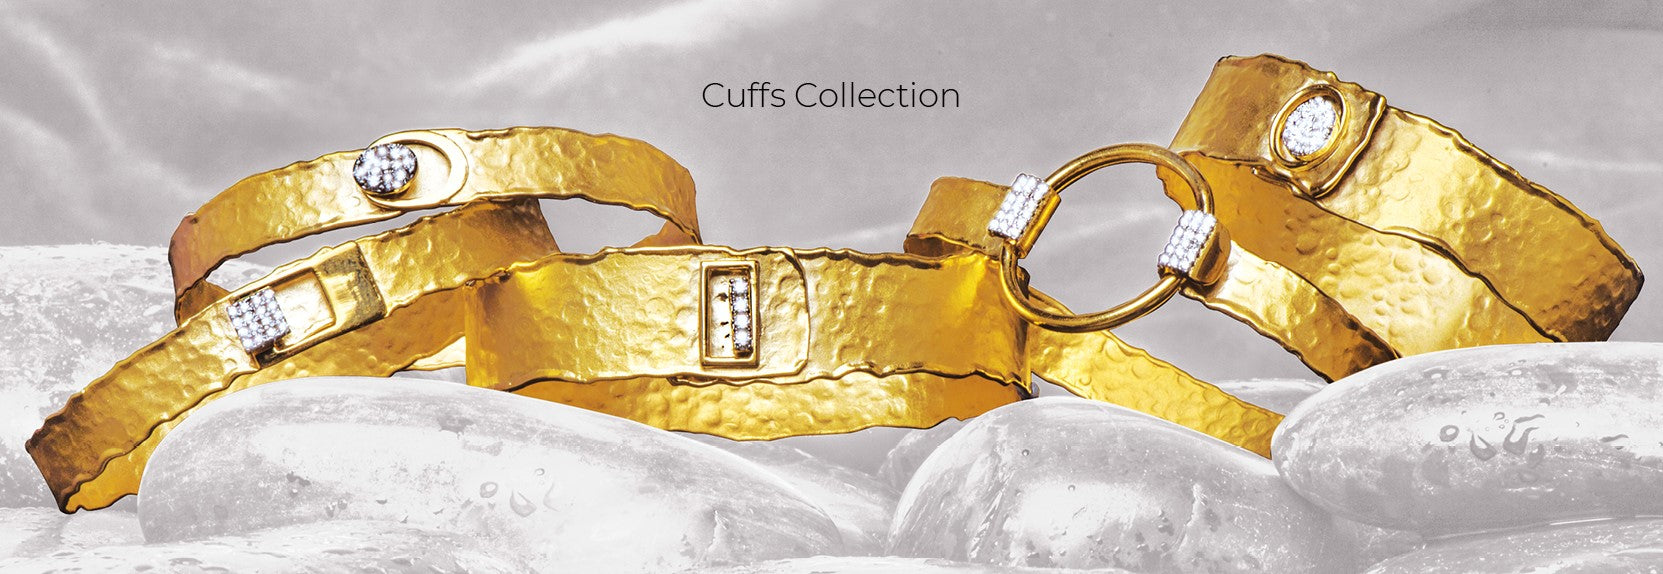 Cuffs Collection